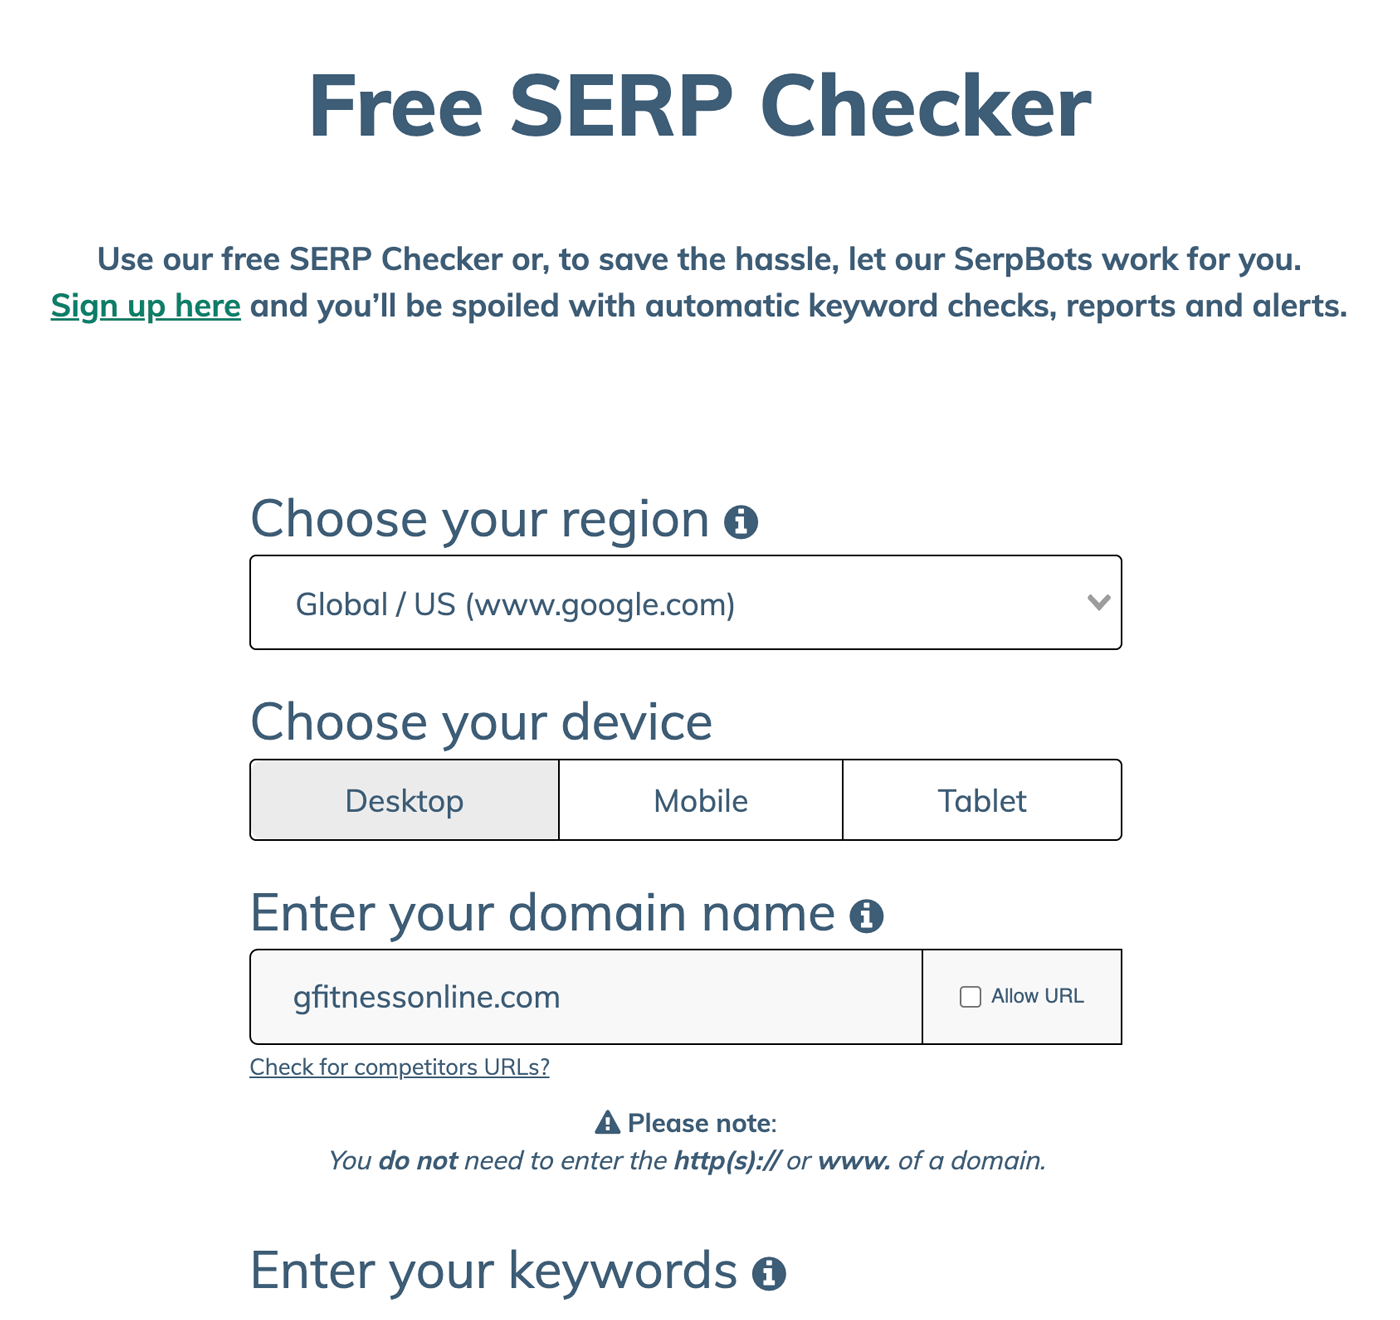 SERPRobot Free SERP Checker